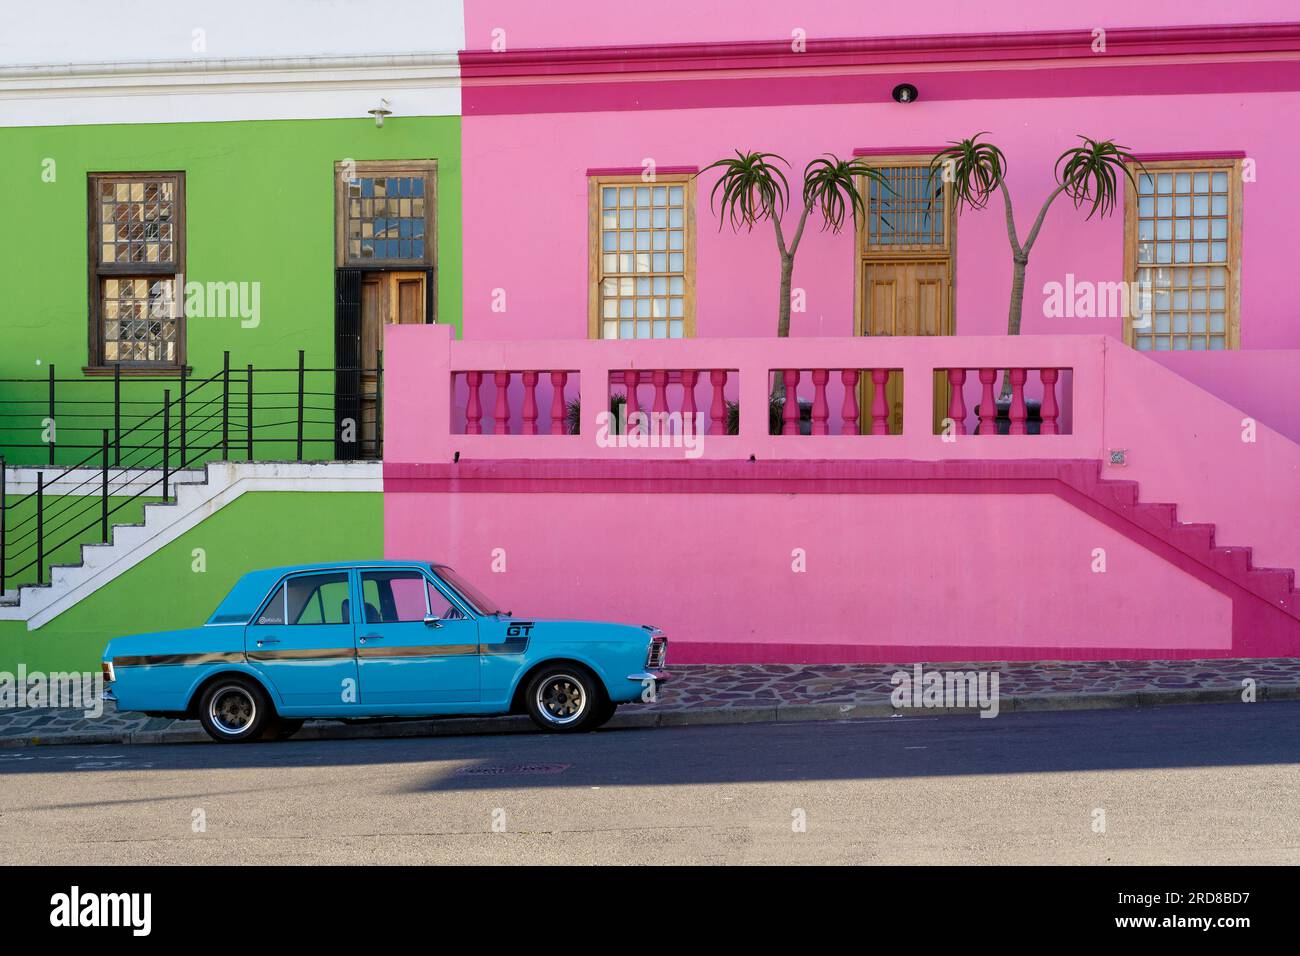 Voiture vintage, Bo-Kaap, Centre historique coloré de la culture Cape Malay, Cape Town, Afrique du Sud, Afrique Banque D'Images